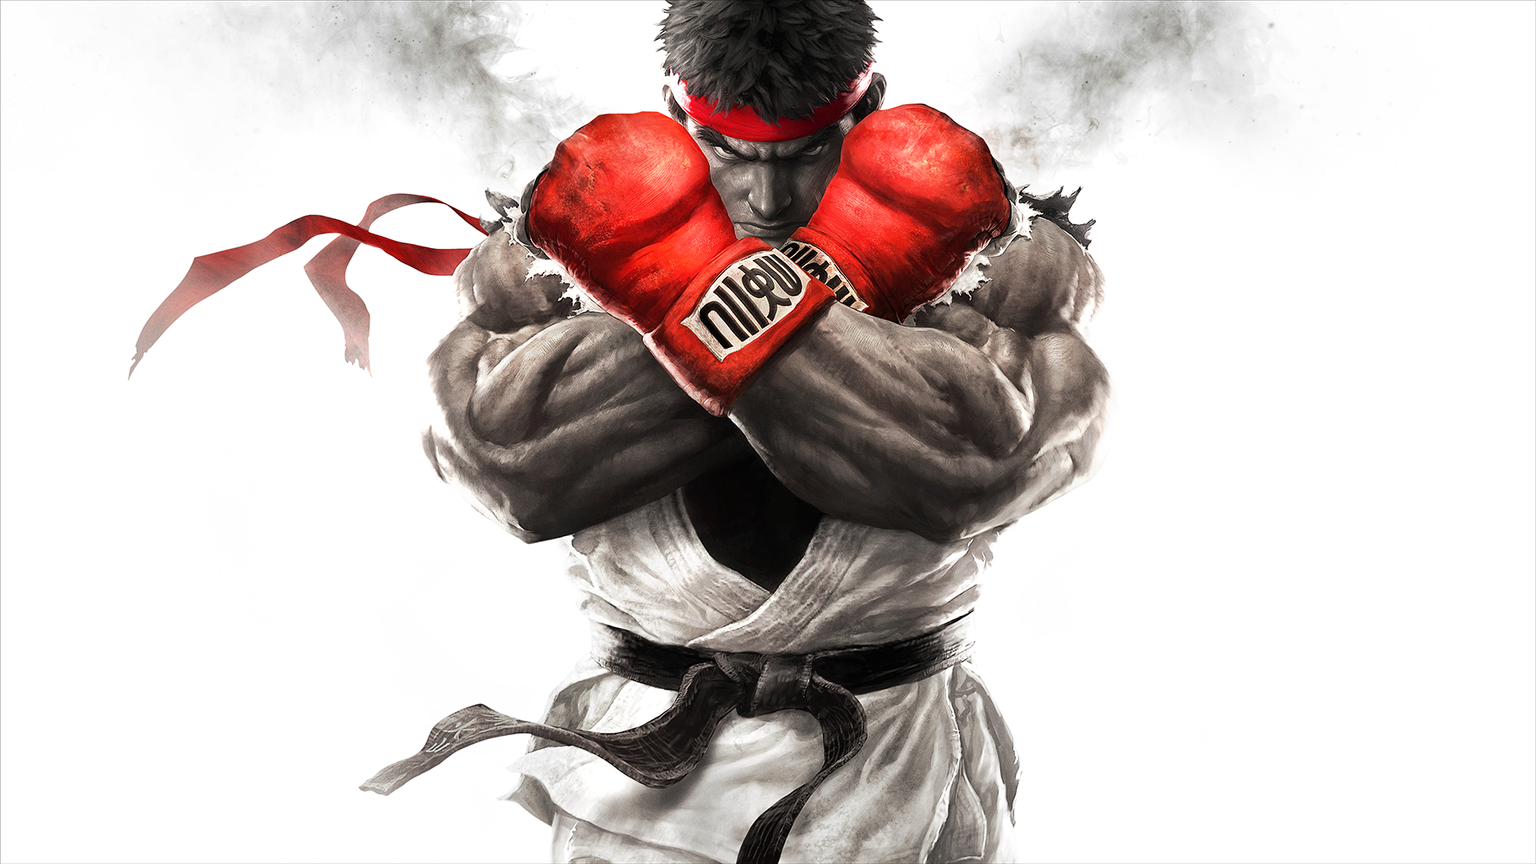 Die E-Sports-Szene braucht mehr Prügelgame-Turniere. Ryu würde sich freuen!